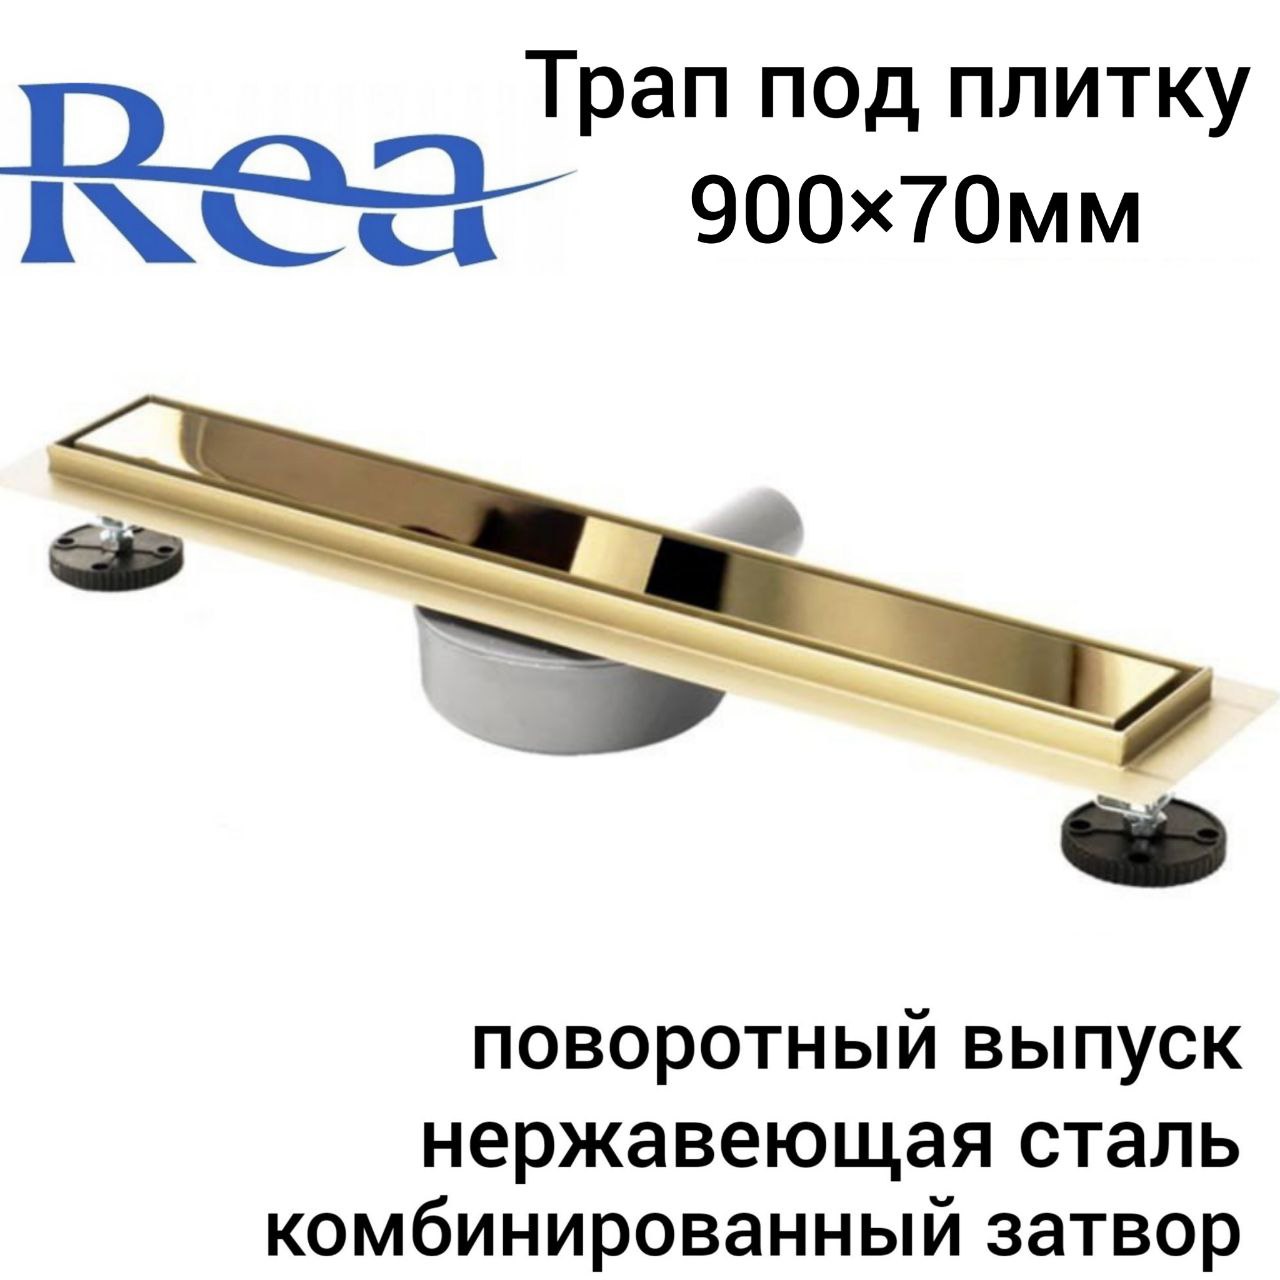 Трап для душа Rea Neo&Pure N Pro Mirror Gold 900х70мм, под плитку комбинированный затвор